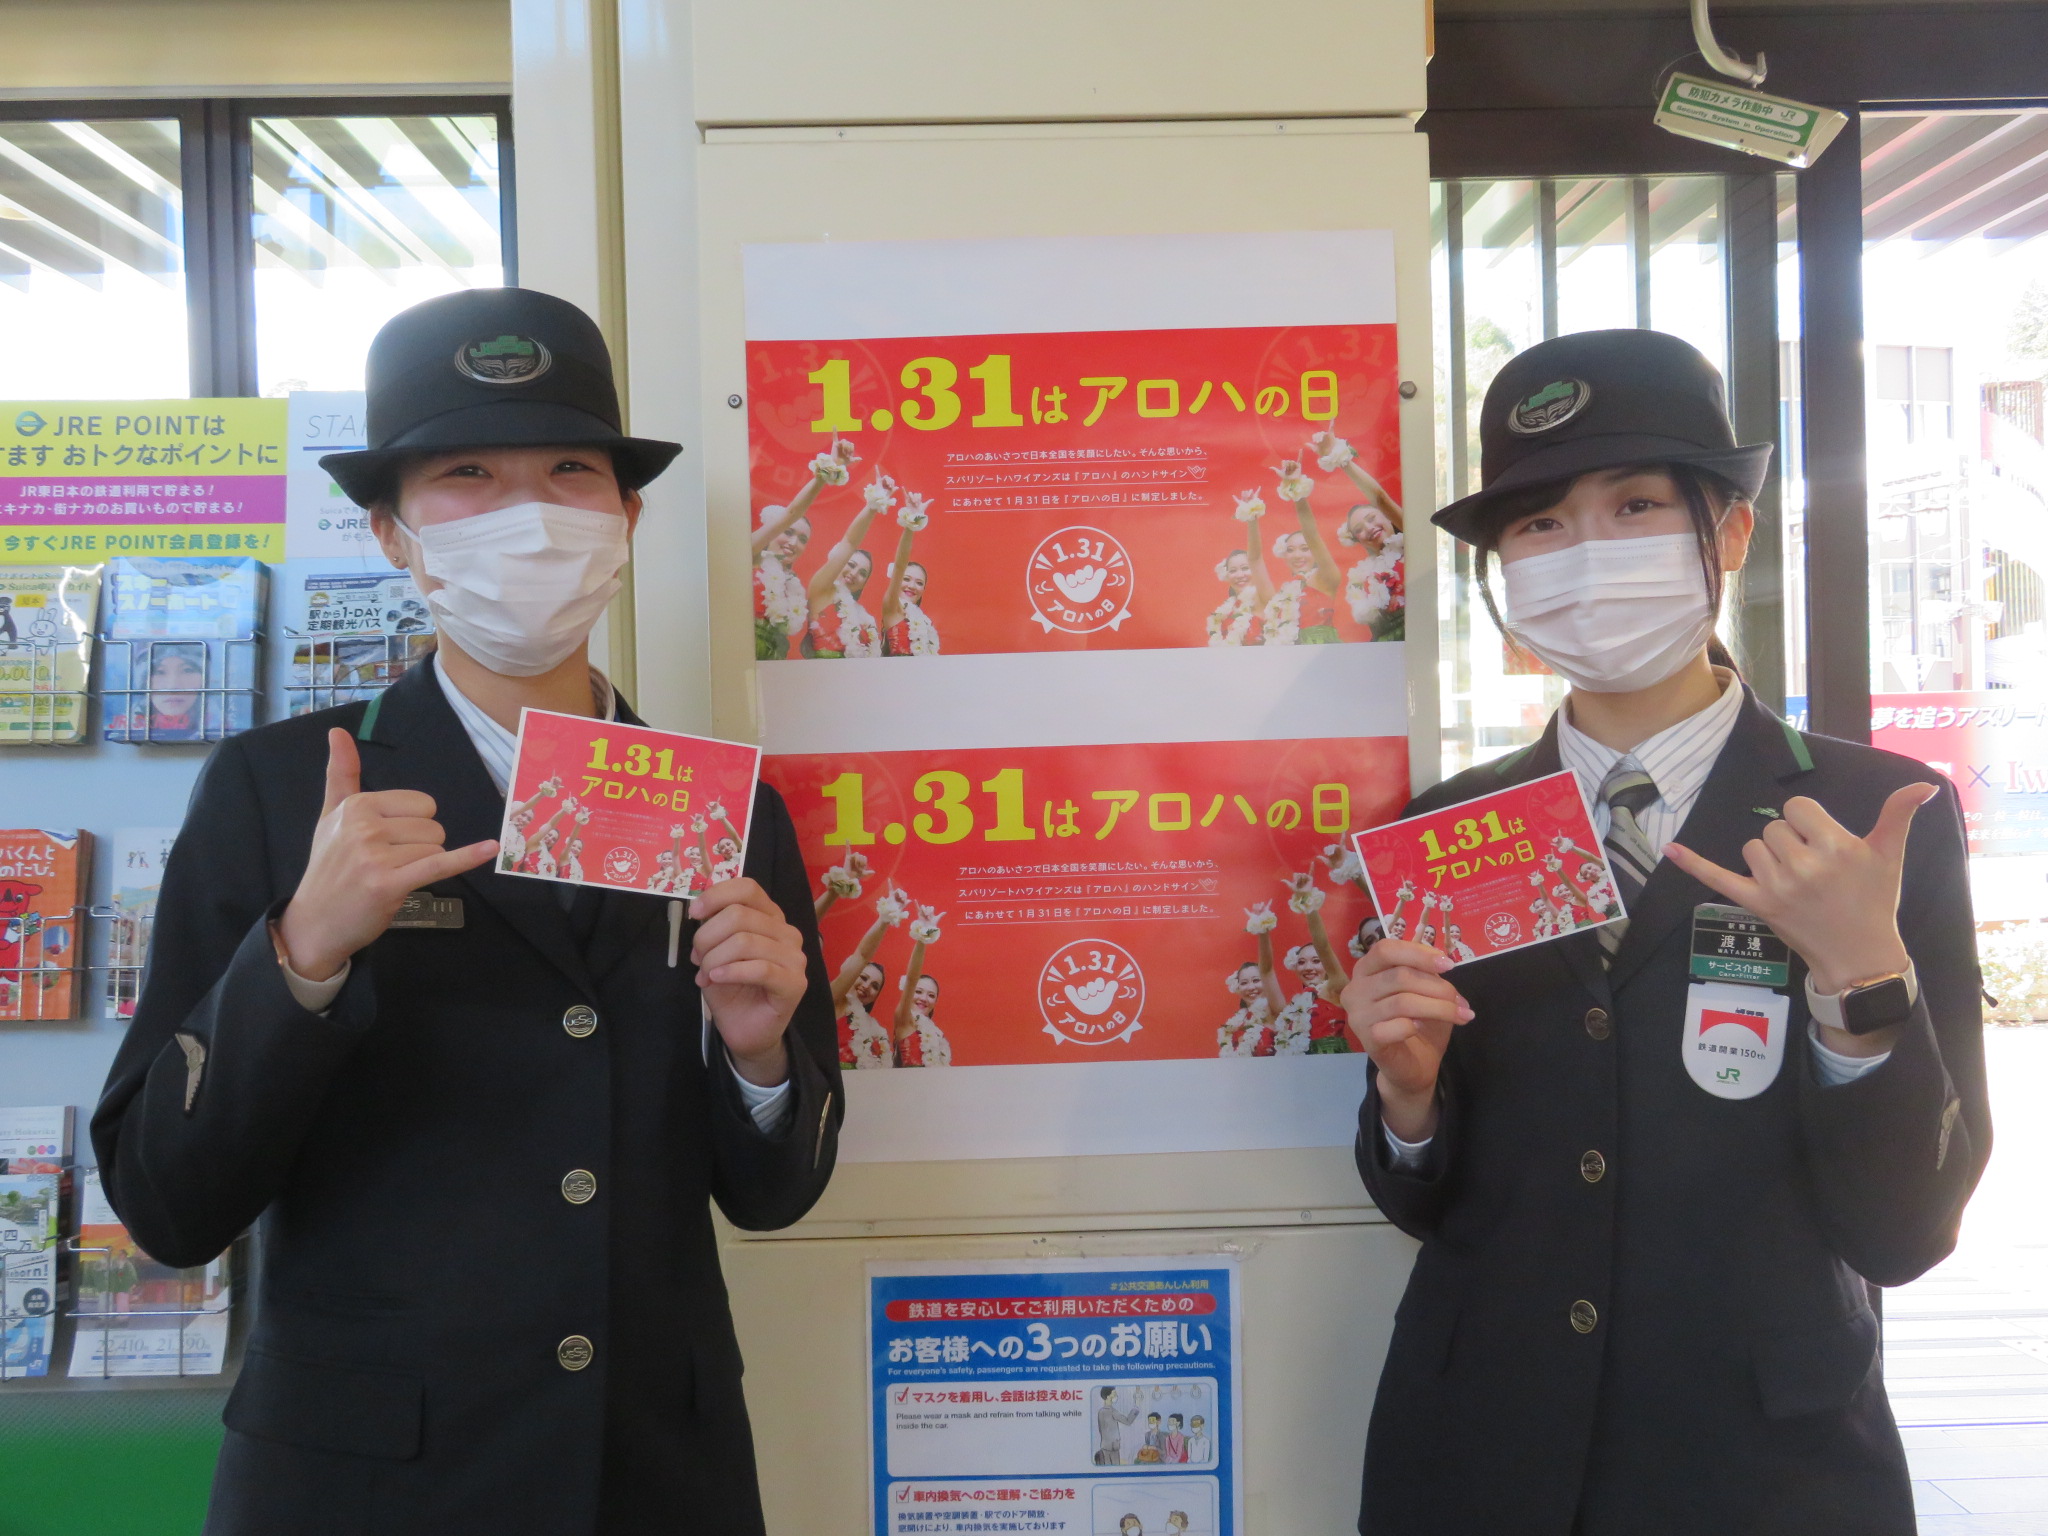 JR湯本駅で『アロハの日』のアナウンス